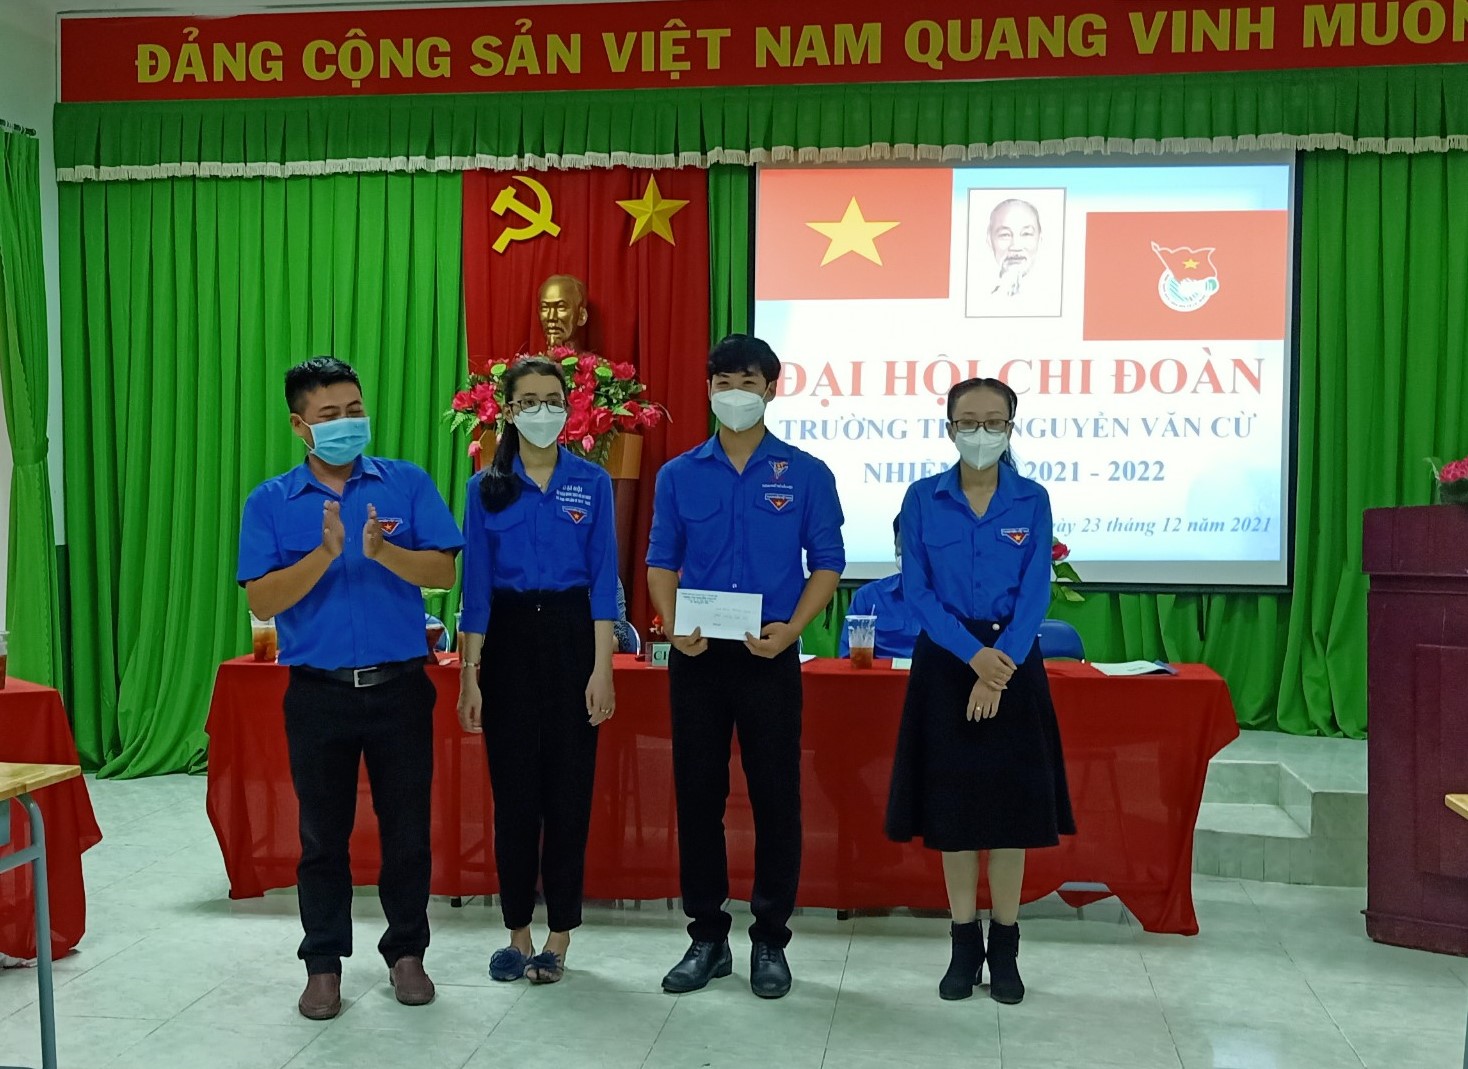 Đại hội Chi đoàn THCS Nguyễn Văn Cừ nhiệm kỳ 2021-2022